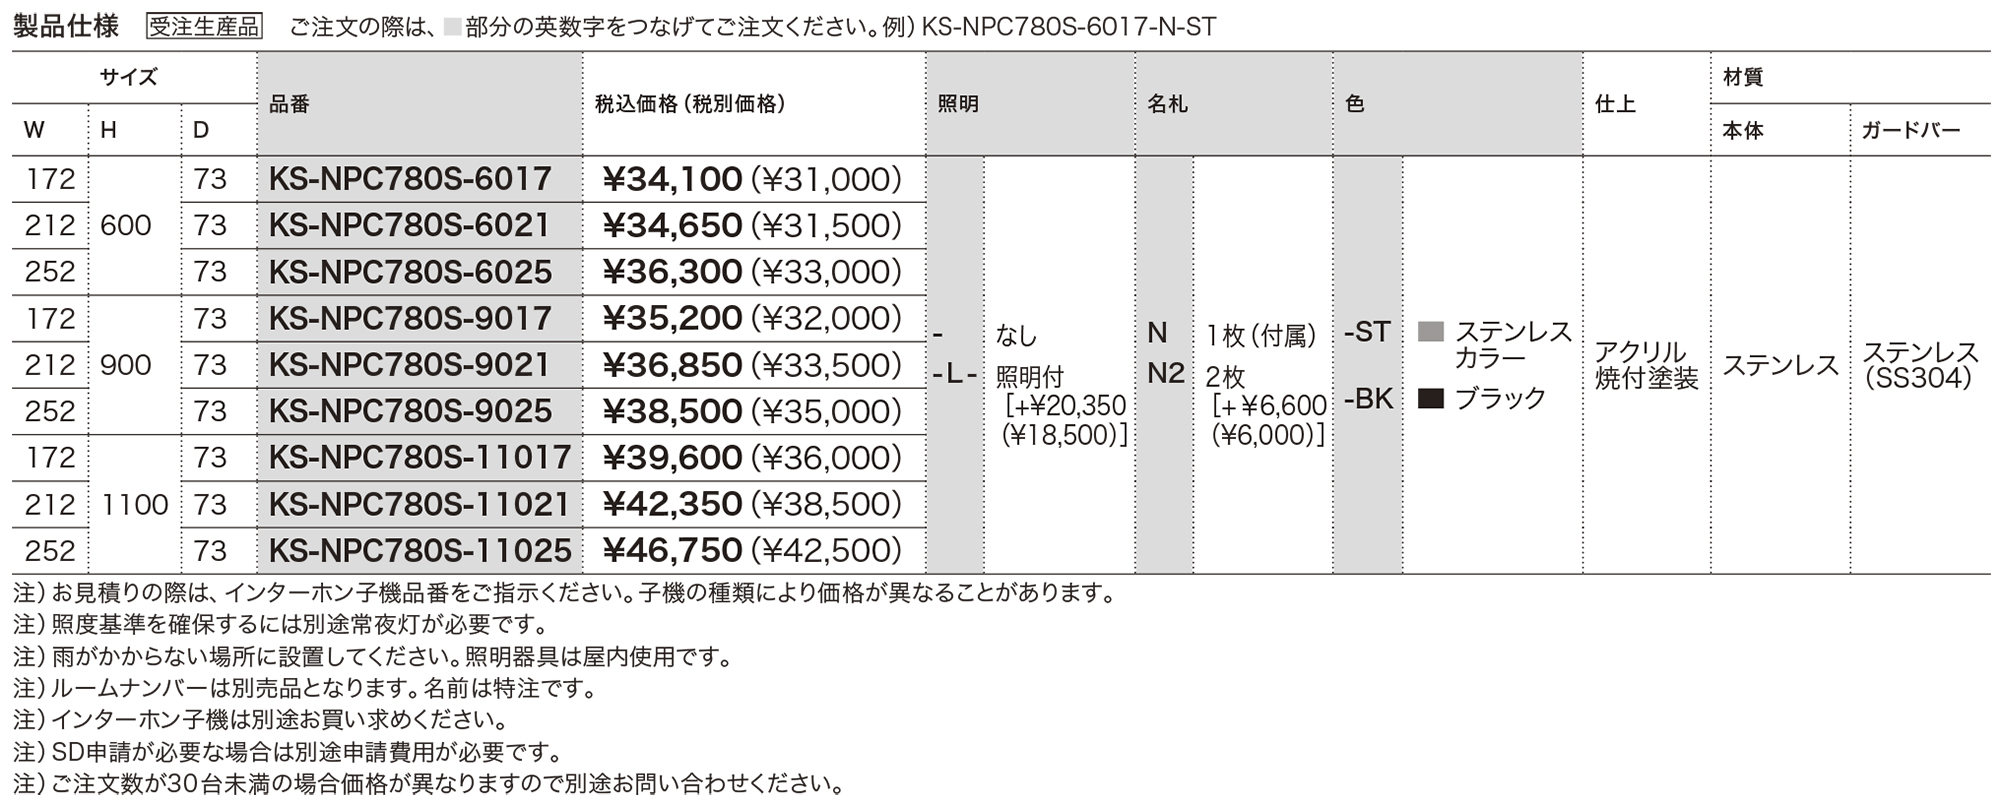 インターホンパネル KS-NPC780S | 表示・サイン | 製品情報 | 株式会社 